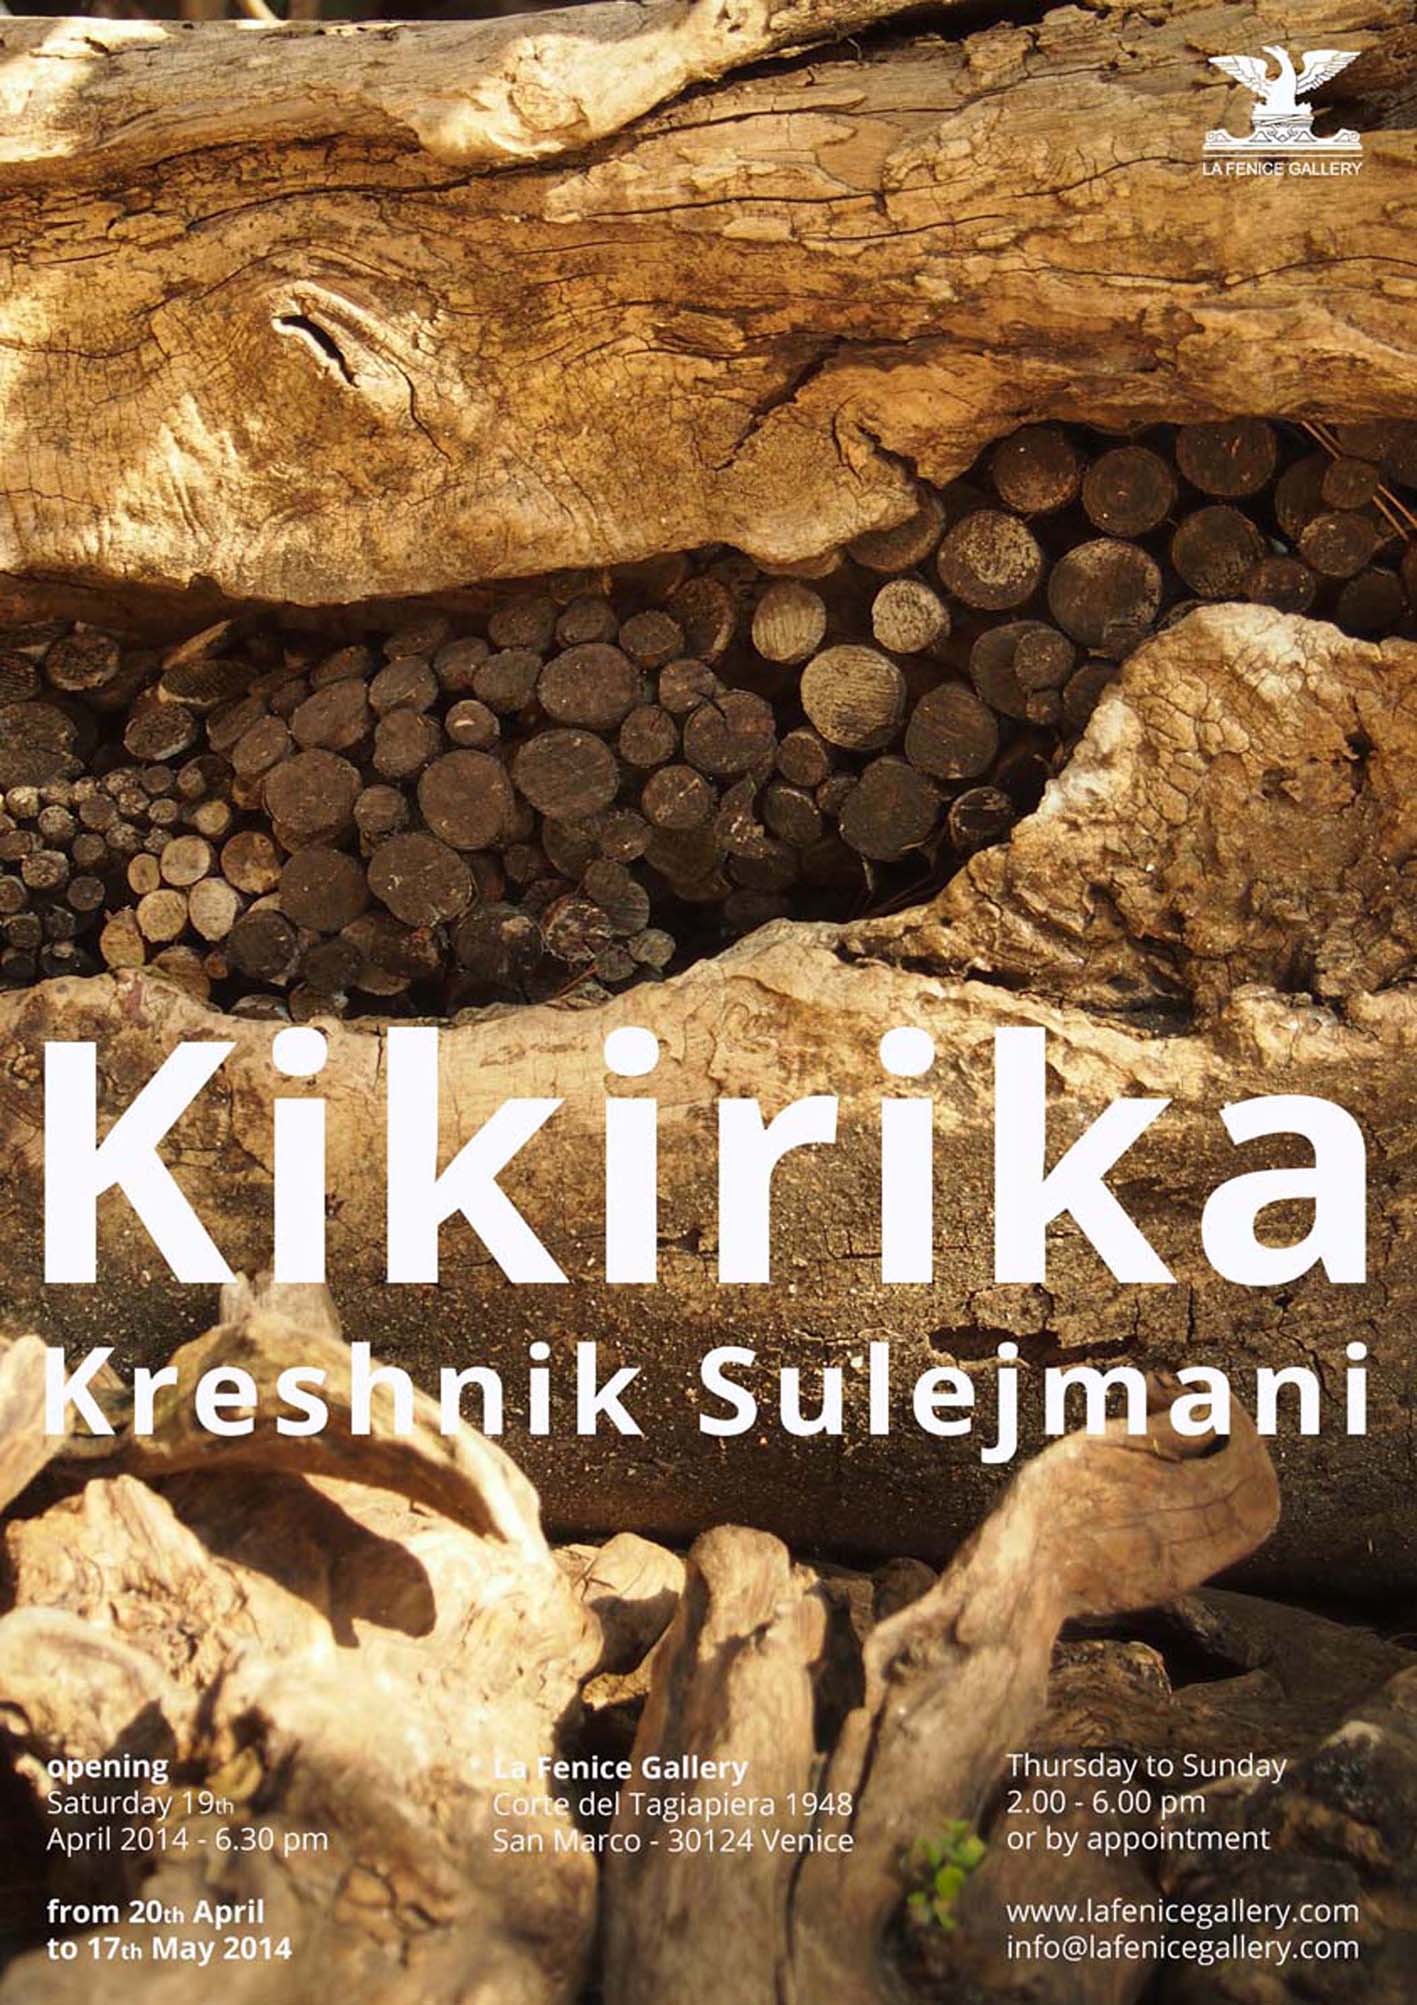 Kreshnik Sulejmani - Kikirika